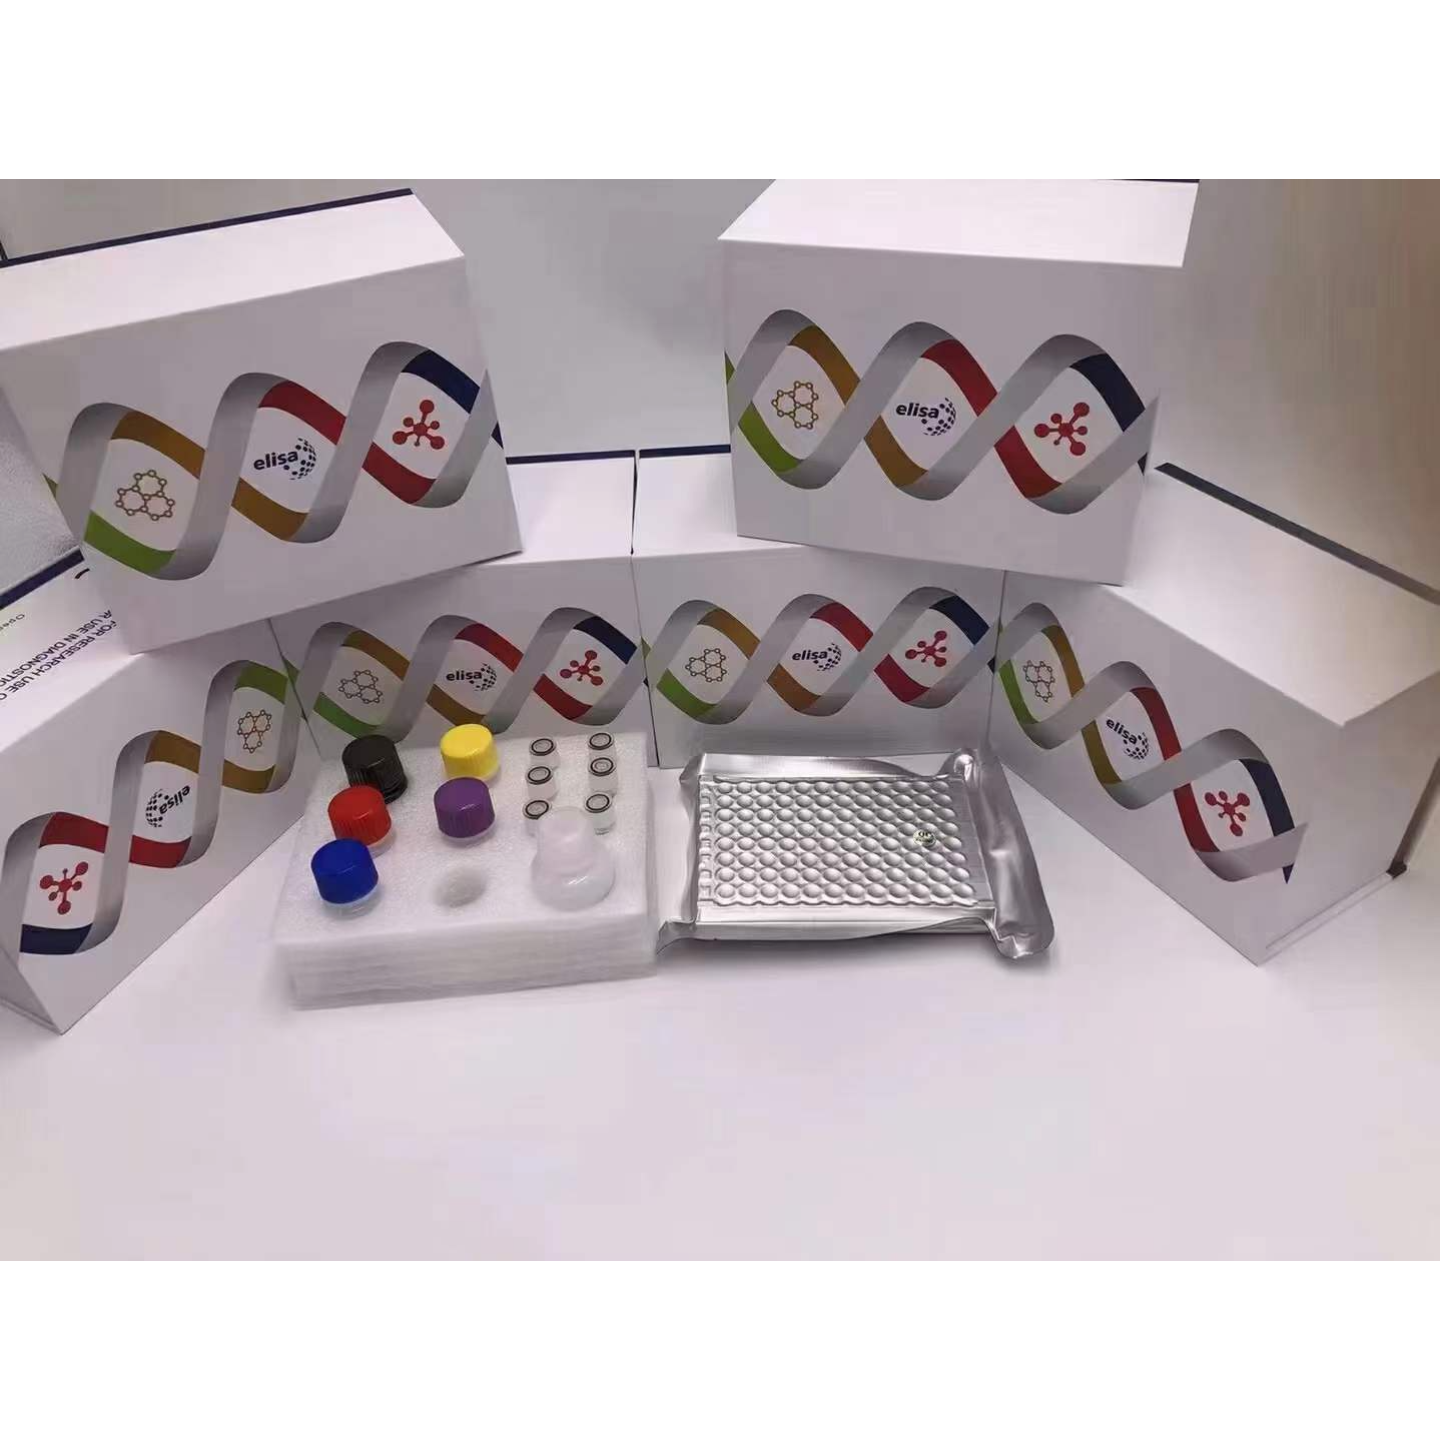 天合昆泰科技凝血酶原（PT） ELISA Kit 酶联免疫法 生物试剂盒